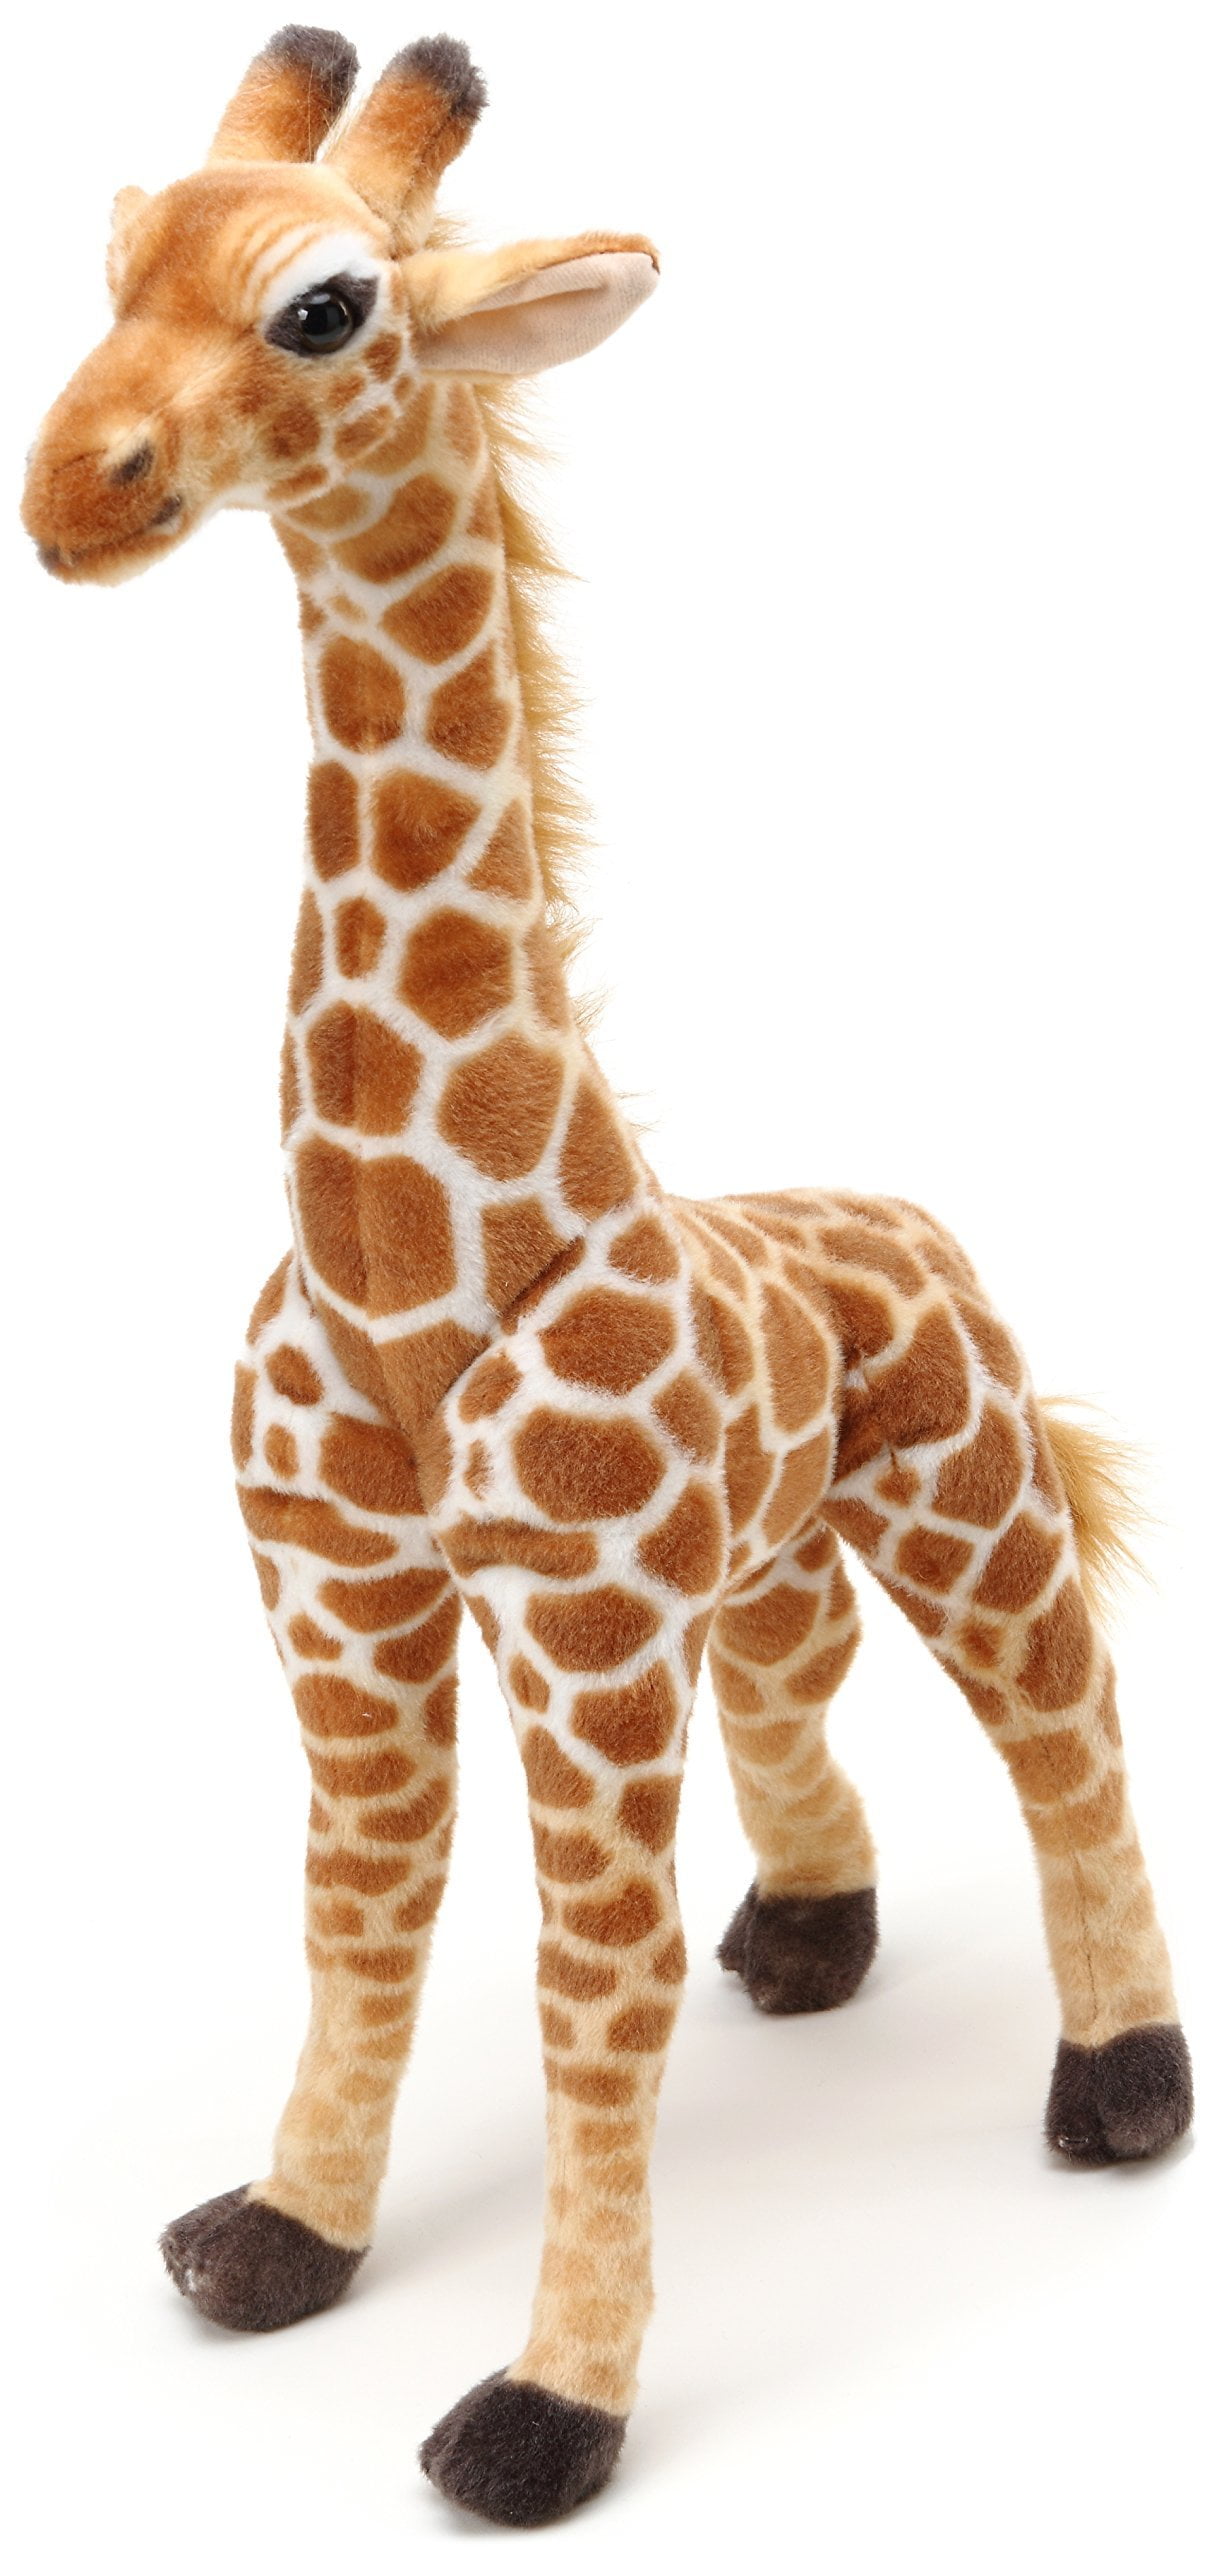 Giraffe Caramel Toy Cuddle Stuffed Animal Play 25" Destination Nation 